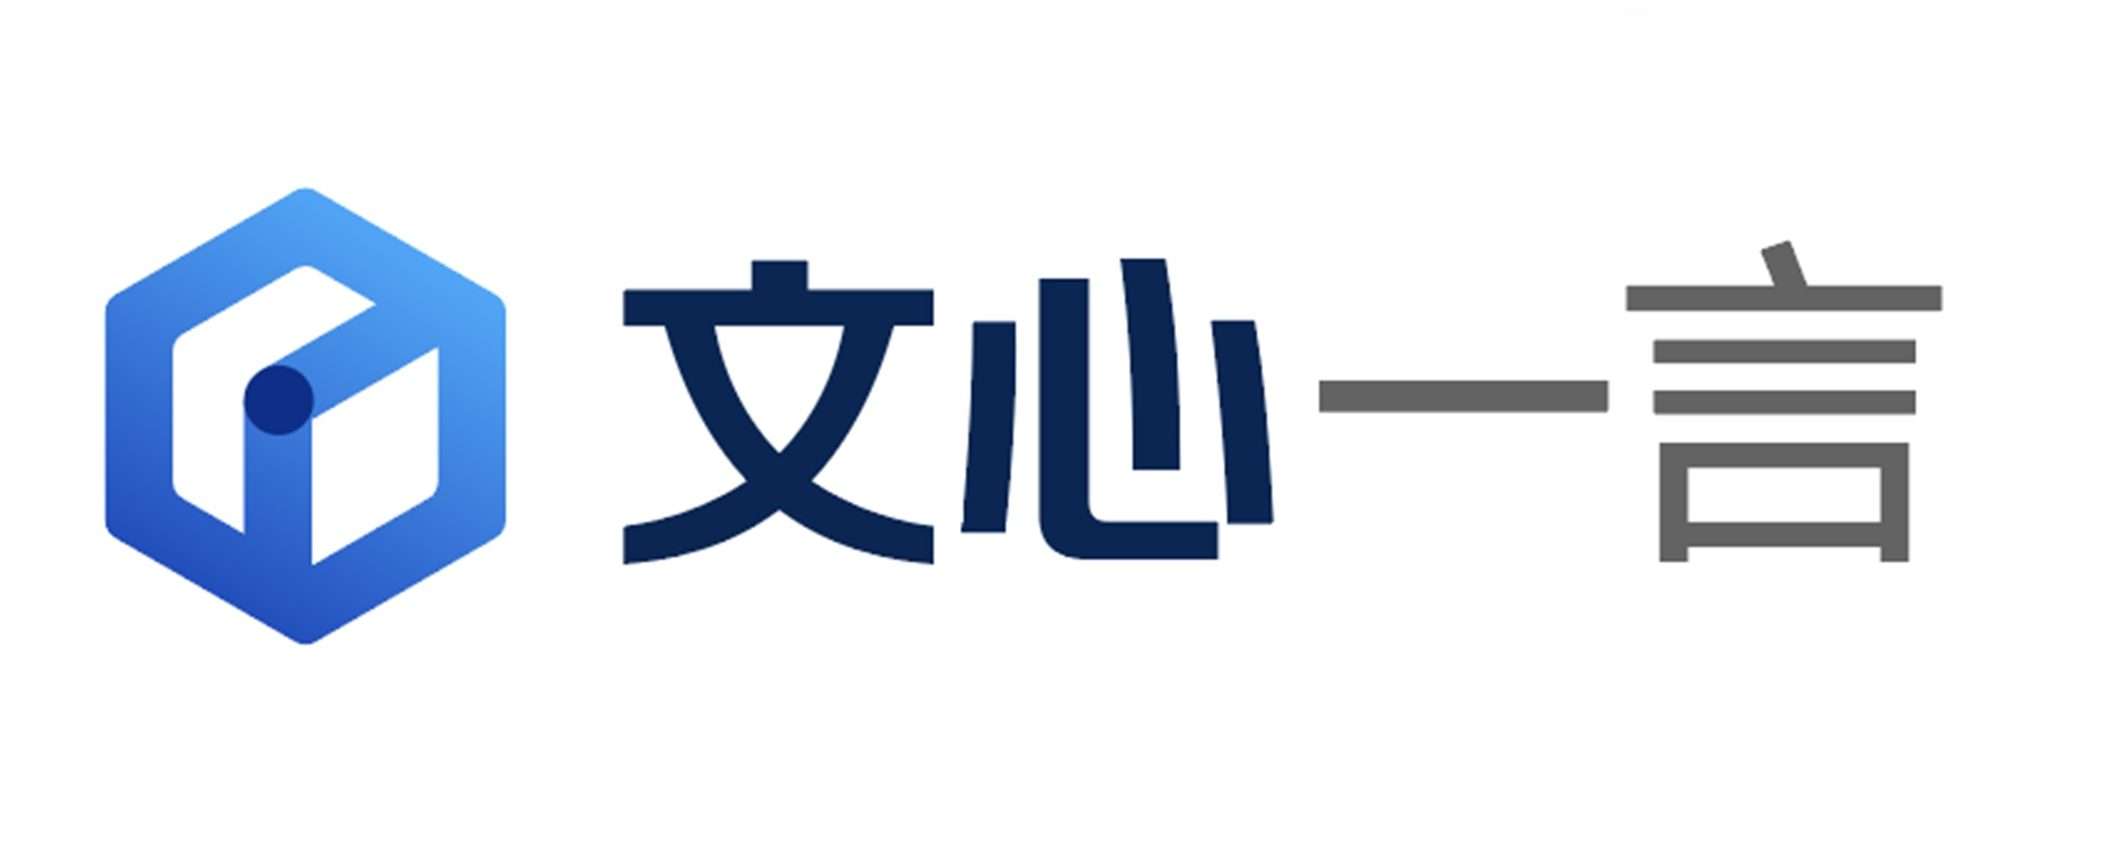 Ernie Bot di Baidu conquista oltre 100 milioni di utenti